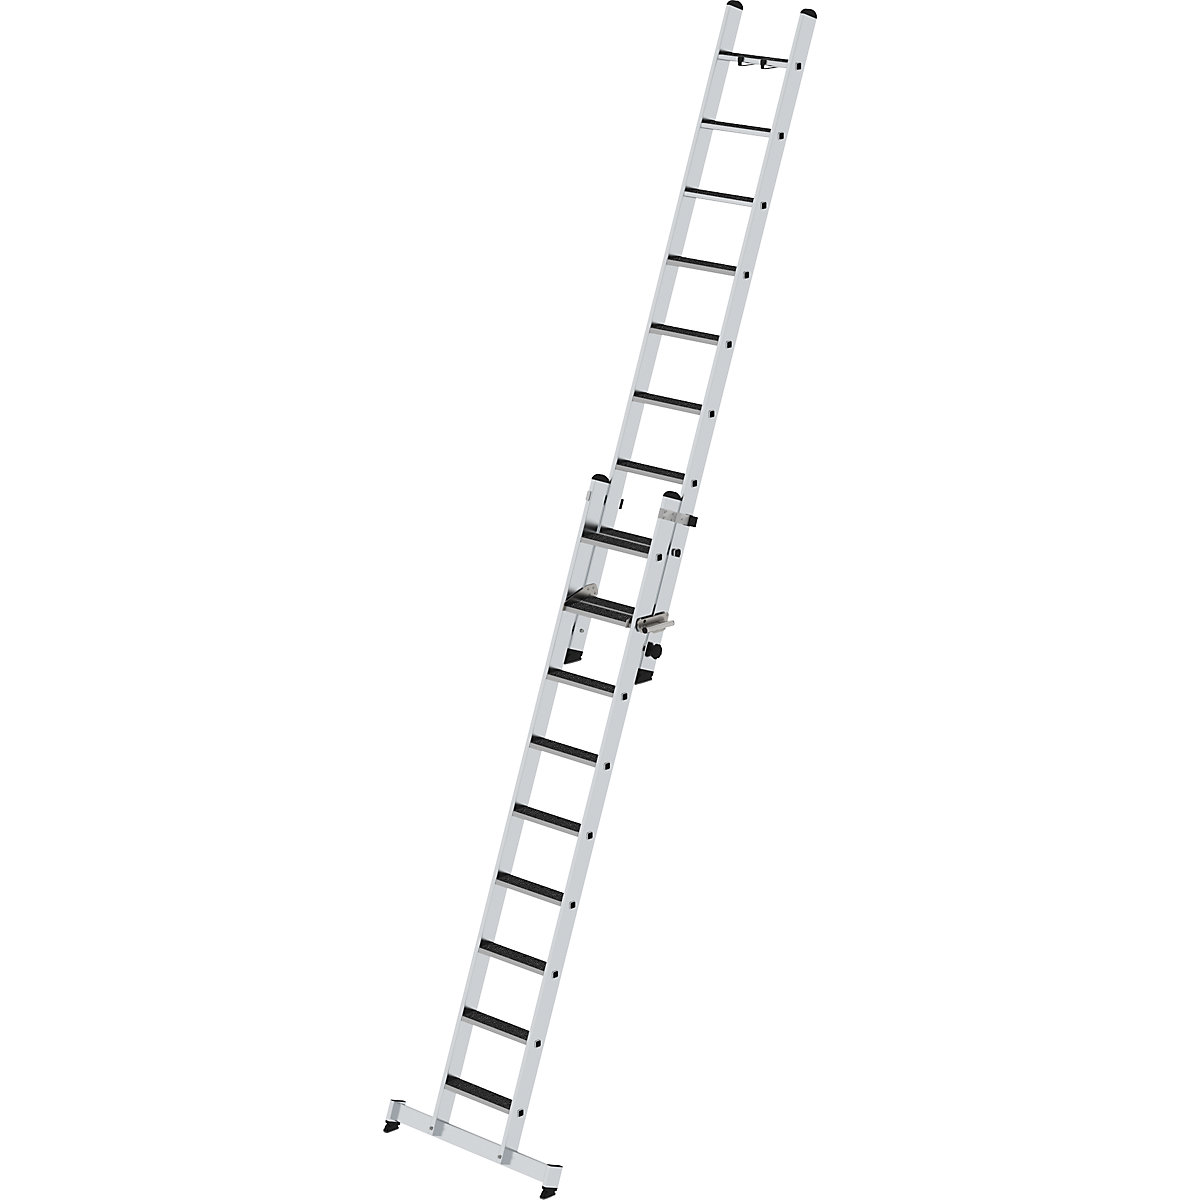 Výsuvný žebřík se stupni, dvoudílný – MUNK, příčník nivello® a nášlapná plocha clip-step, 18 stupňů-2